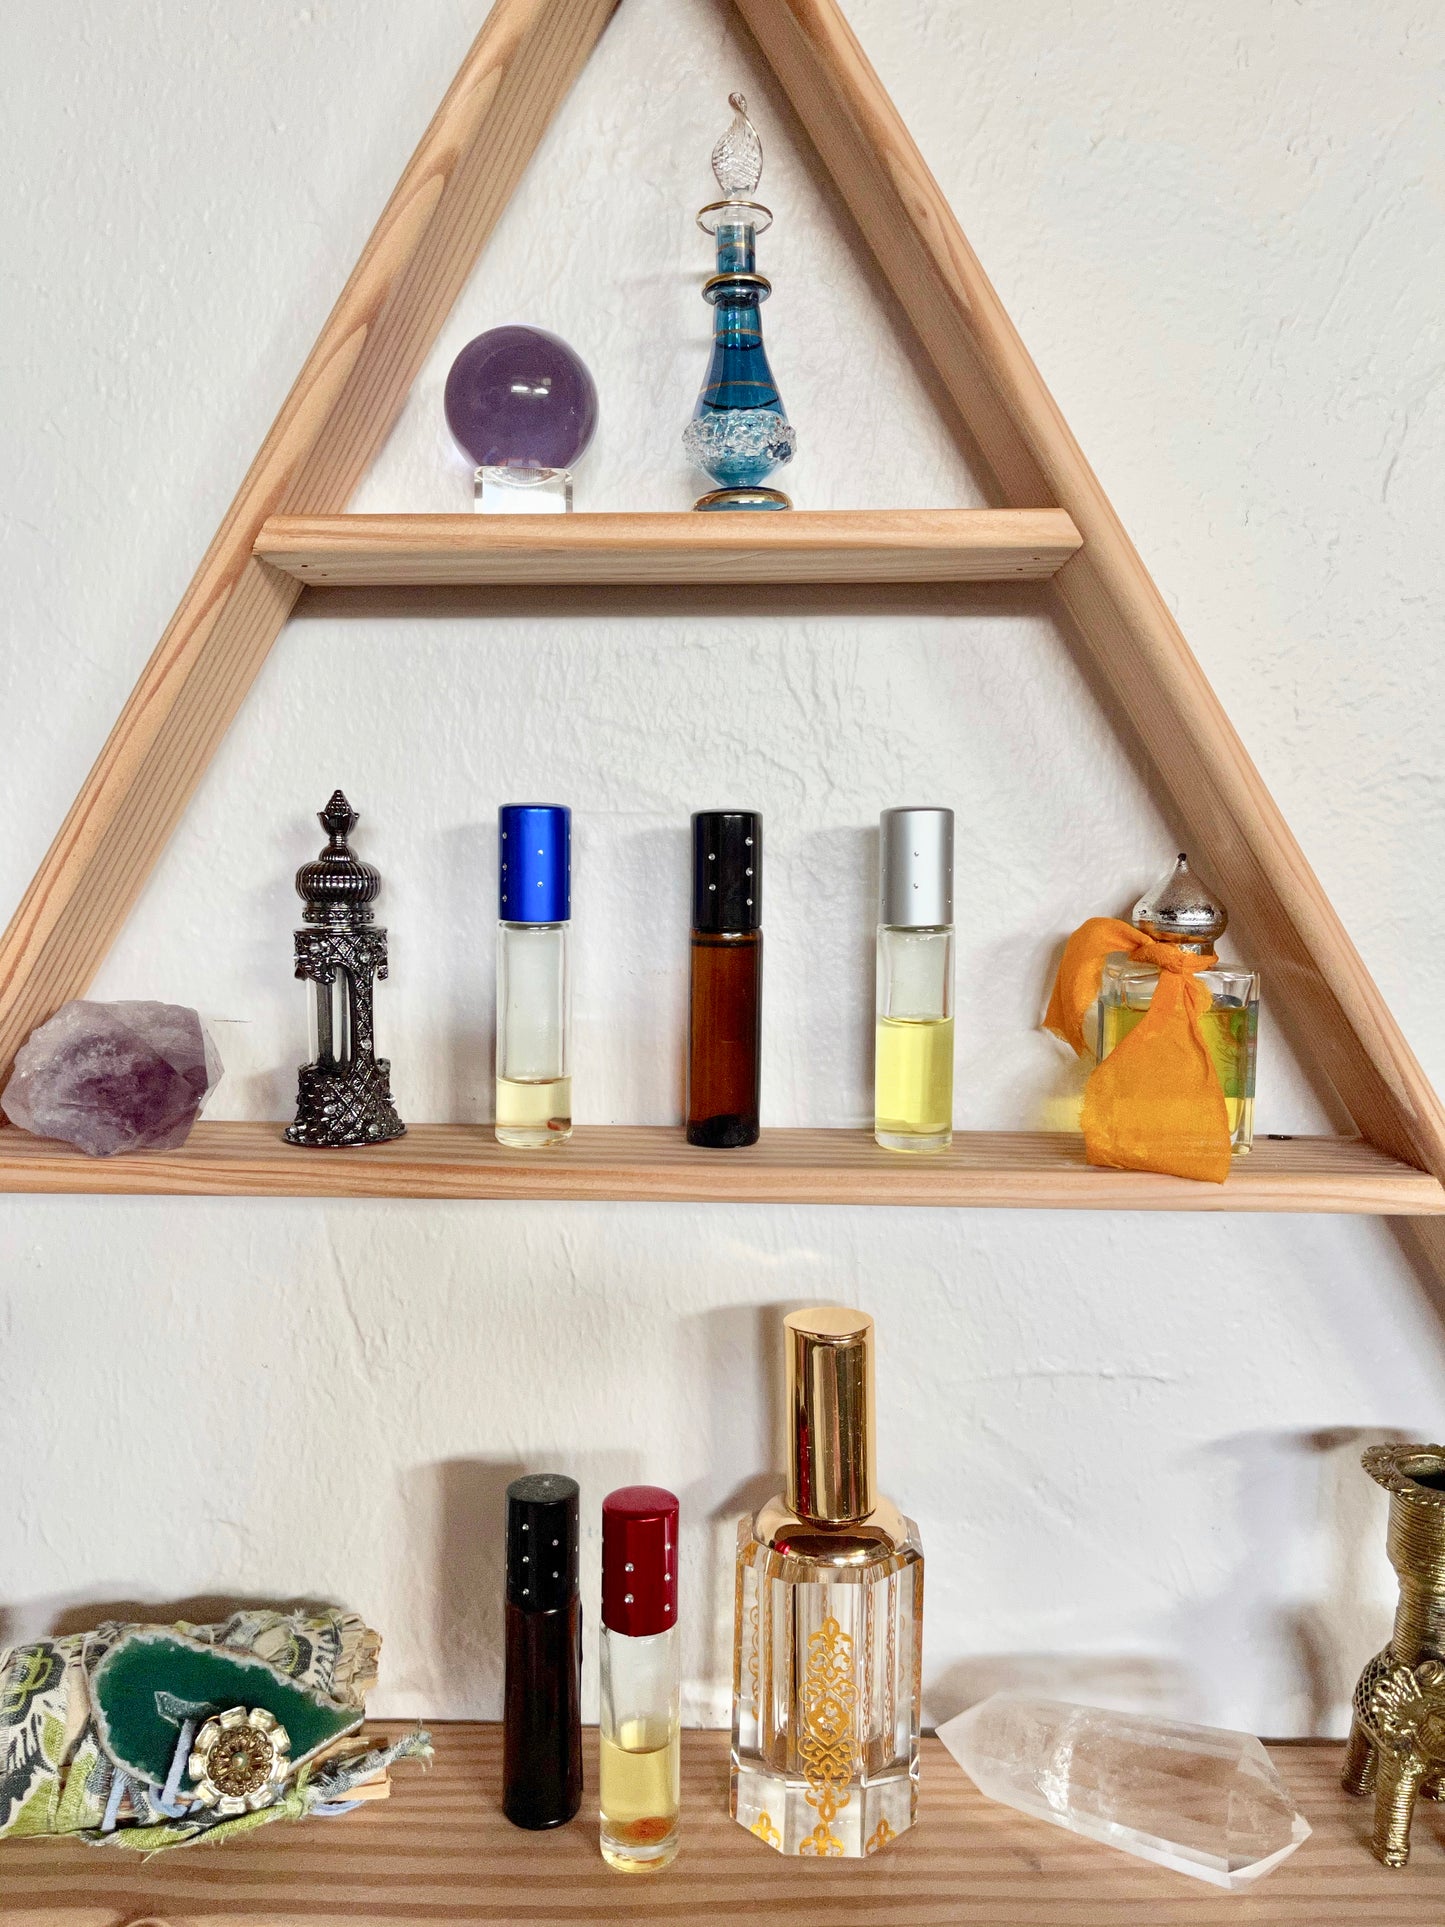 Essential Oils Shelf, Apothecary, Home Decor